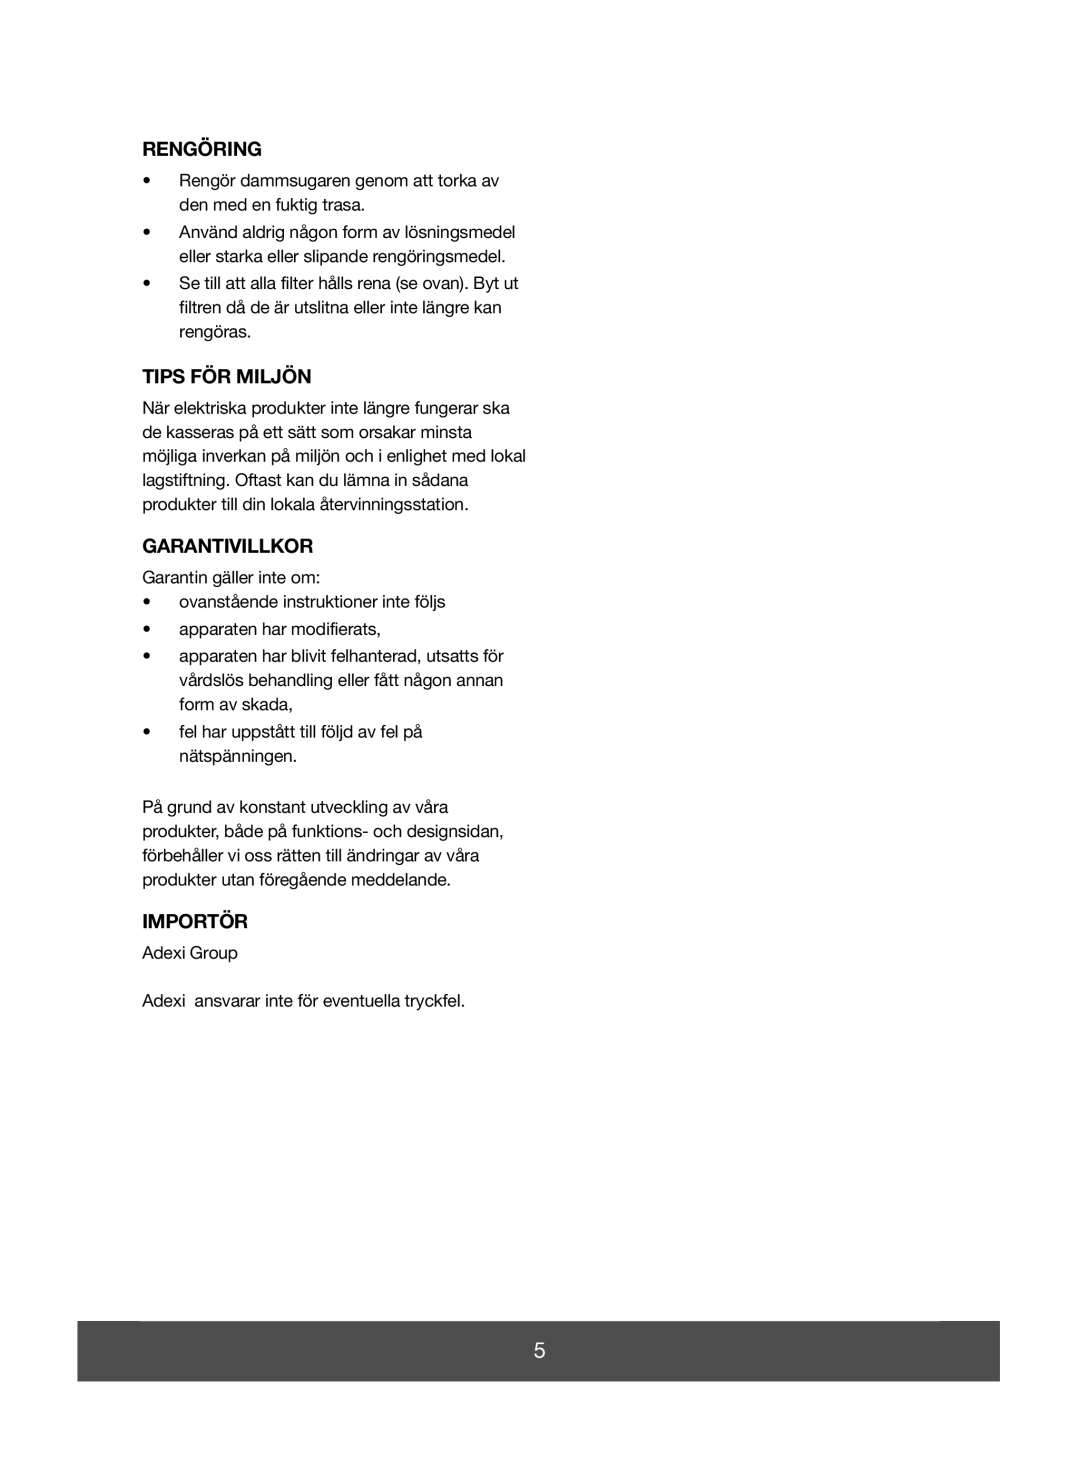 Melissa 740-096 manual Rengöring, Tips För Miljön, Garantivillkor, Importör 